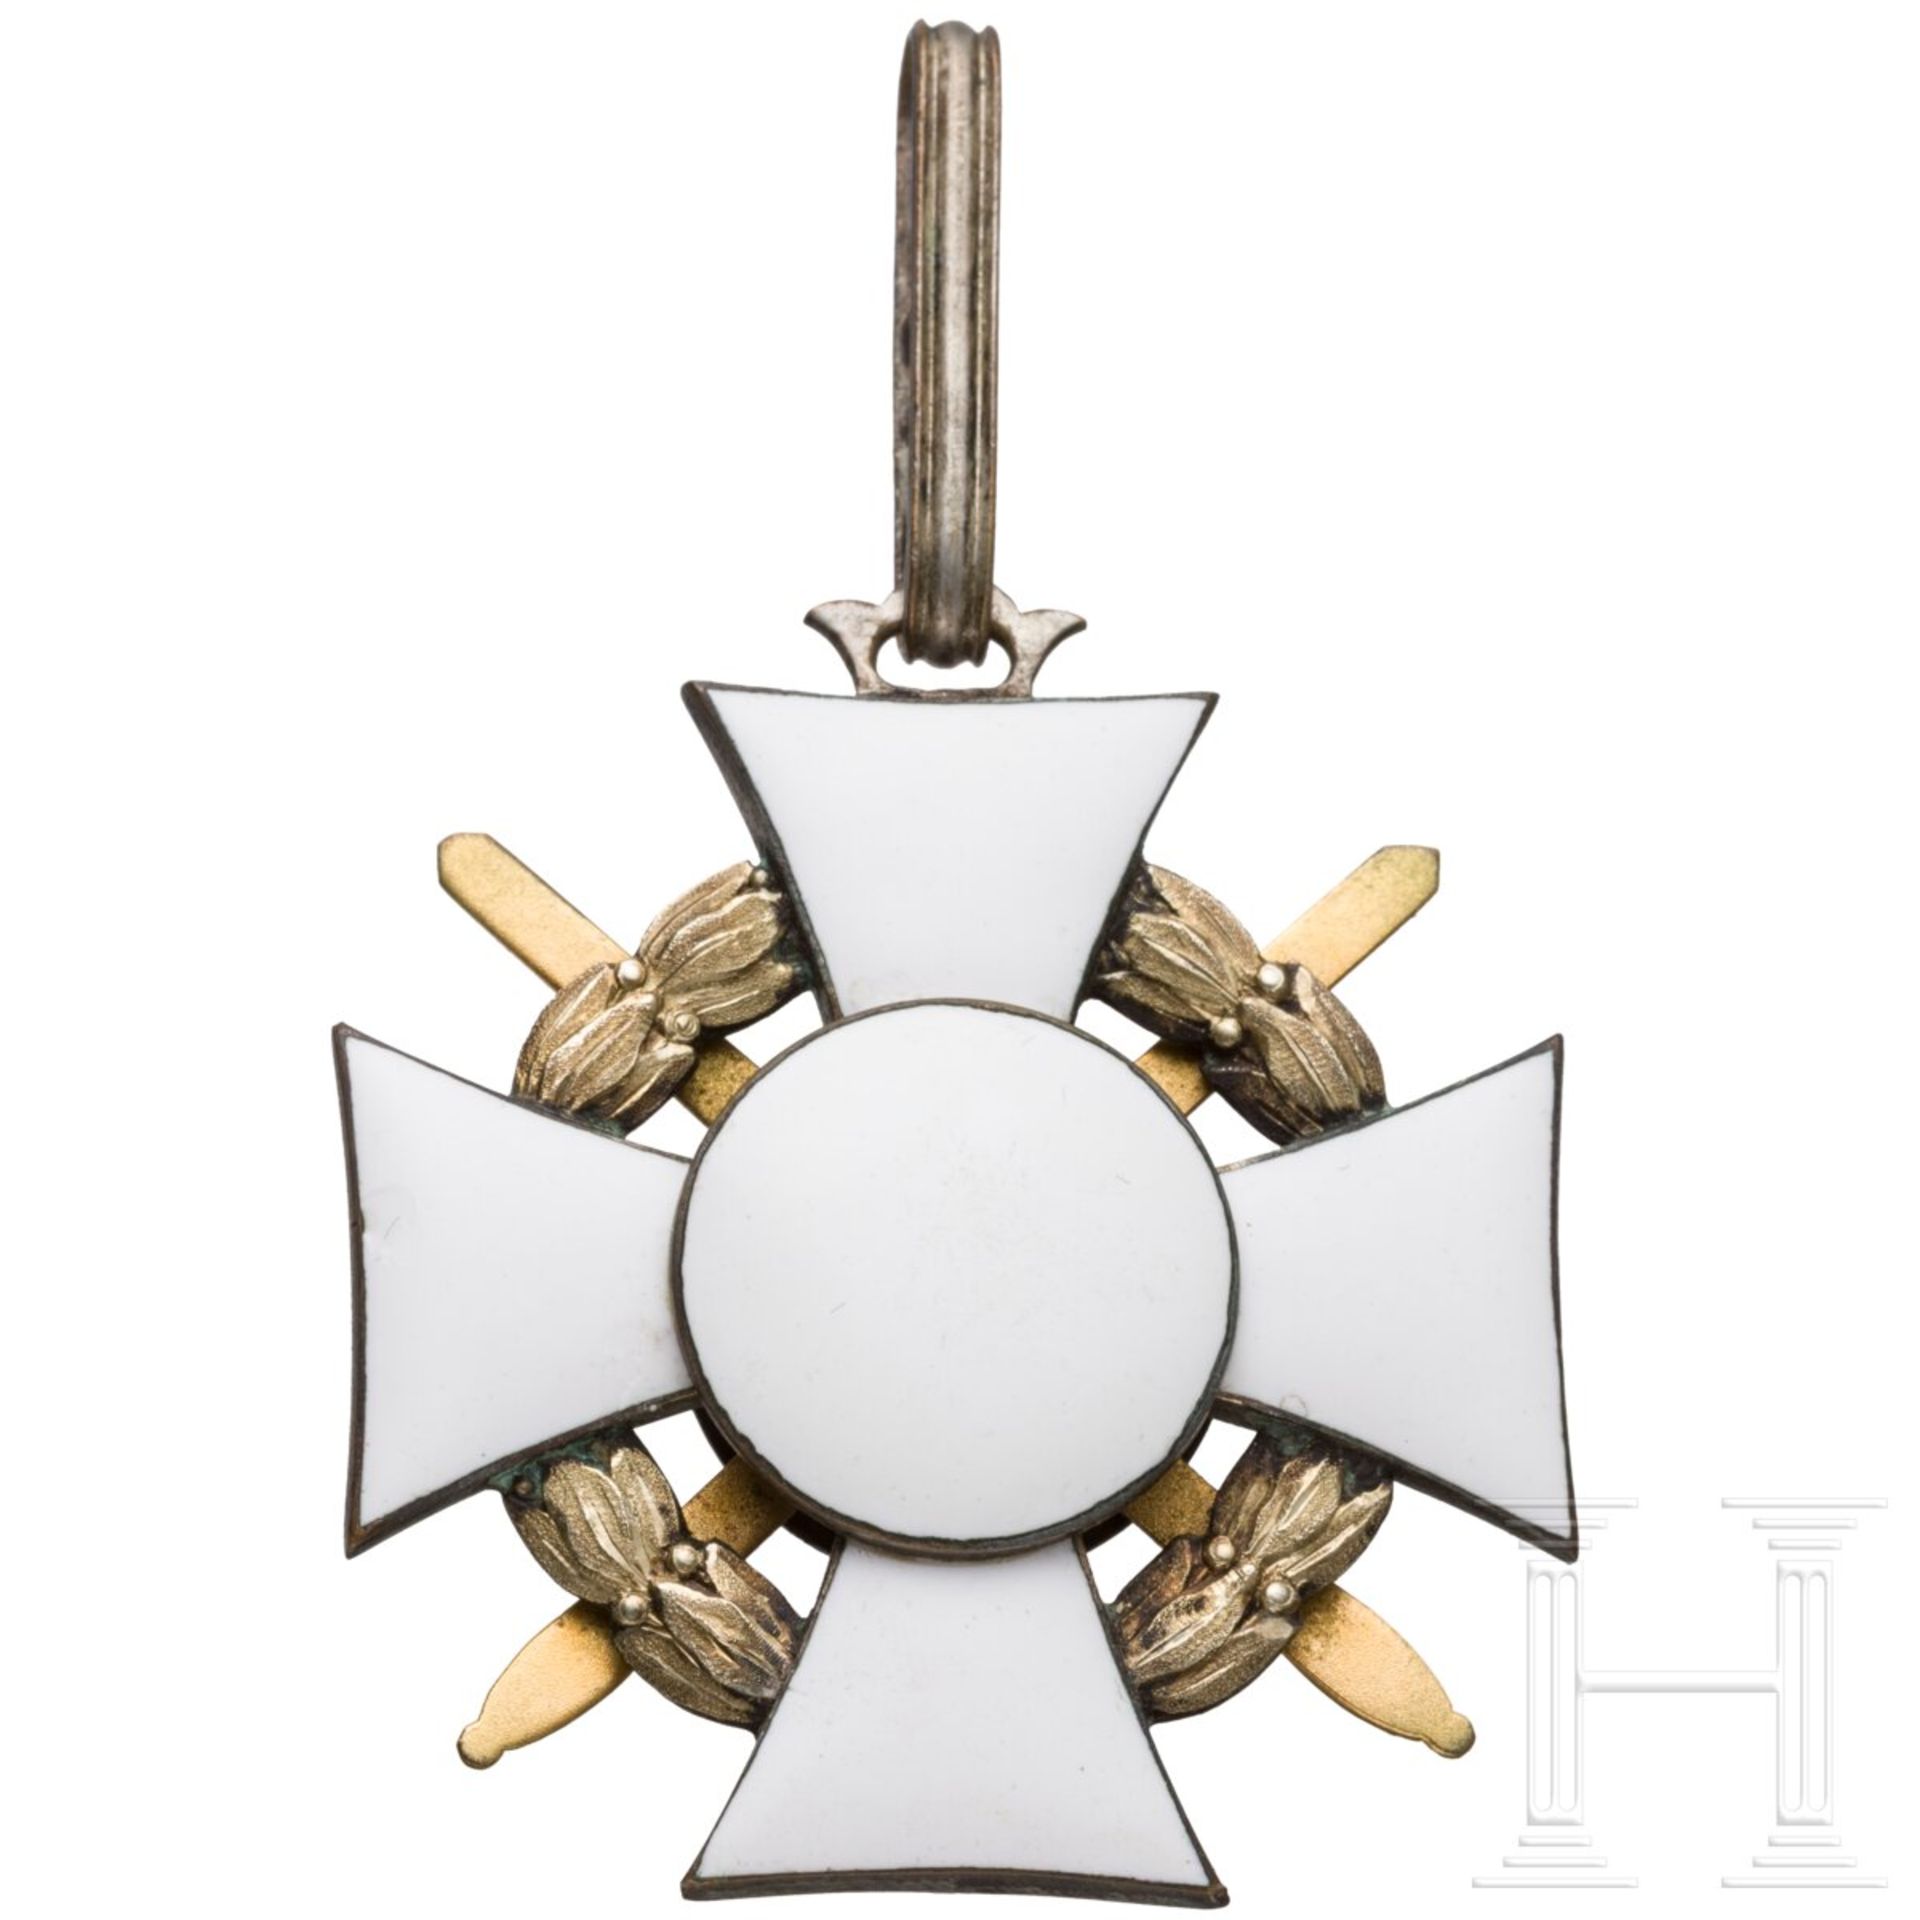 Militärverdienstkreuz 2. Klasse mit Kriegsdekoration - Image 2 of 3